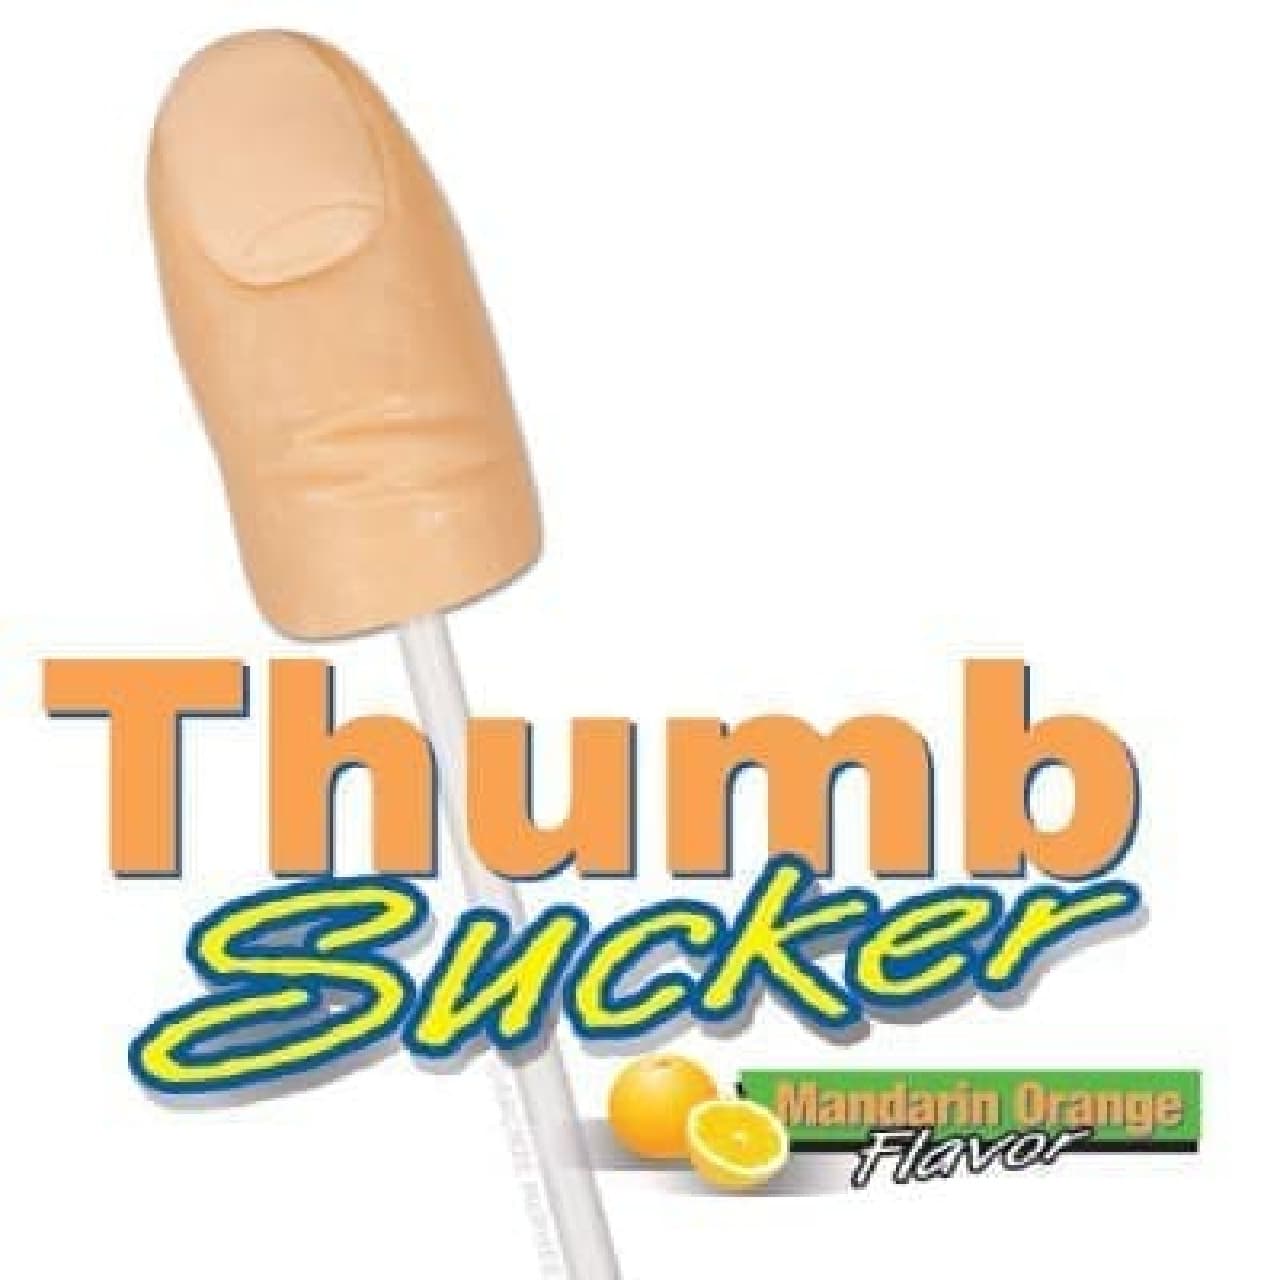 親指型キャンディー「Thumb Sucker」